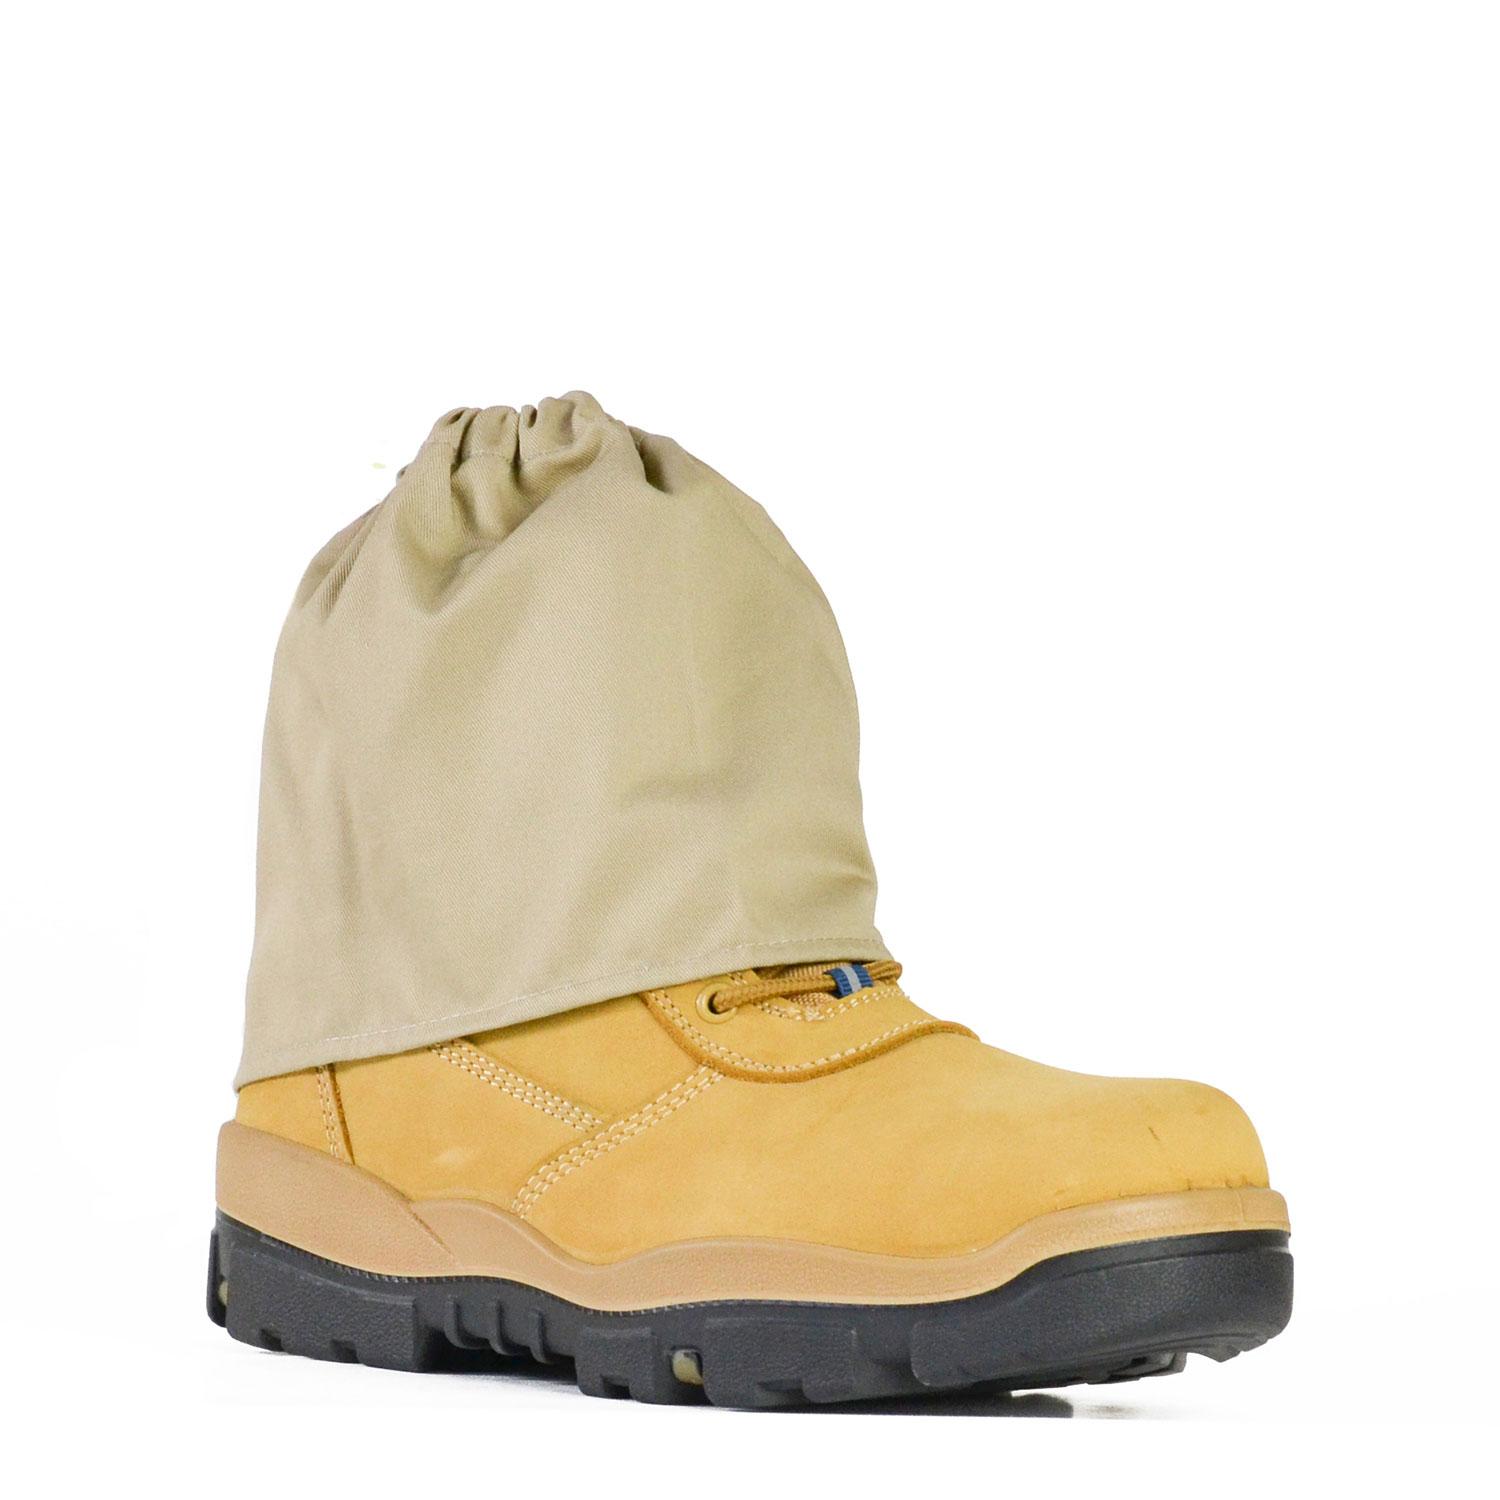 Bata Overboot - Khaki-Bata Industrials Footwear